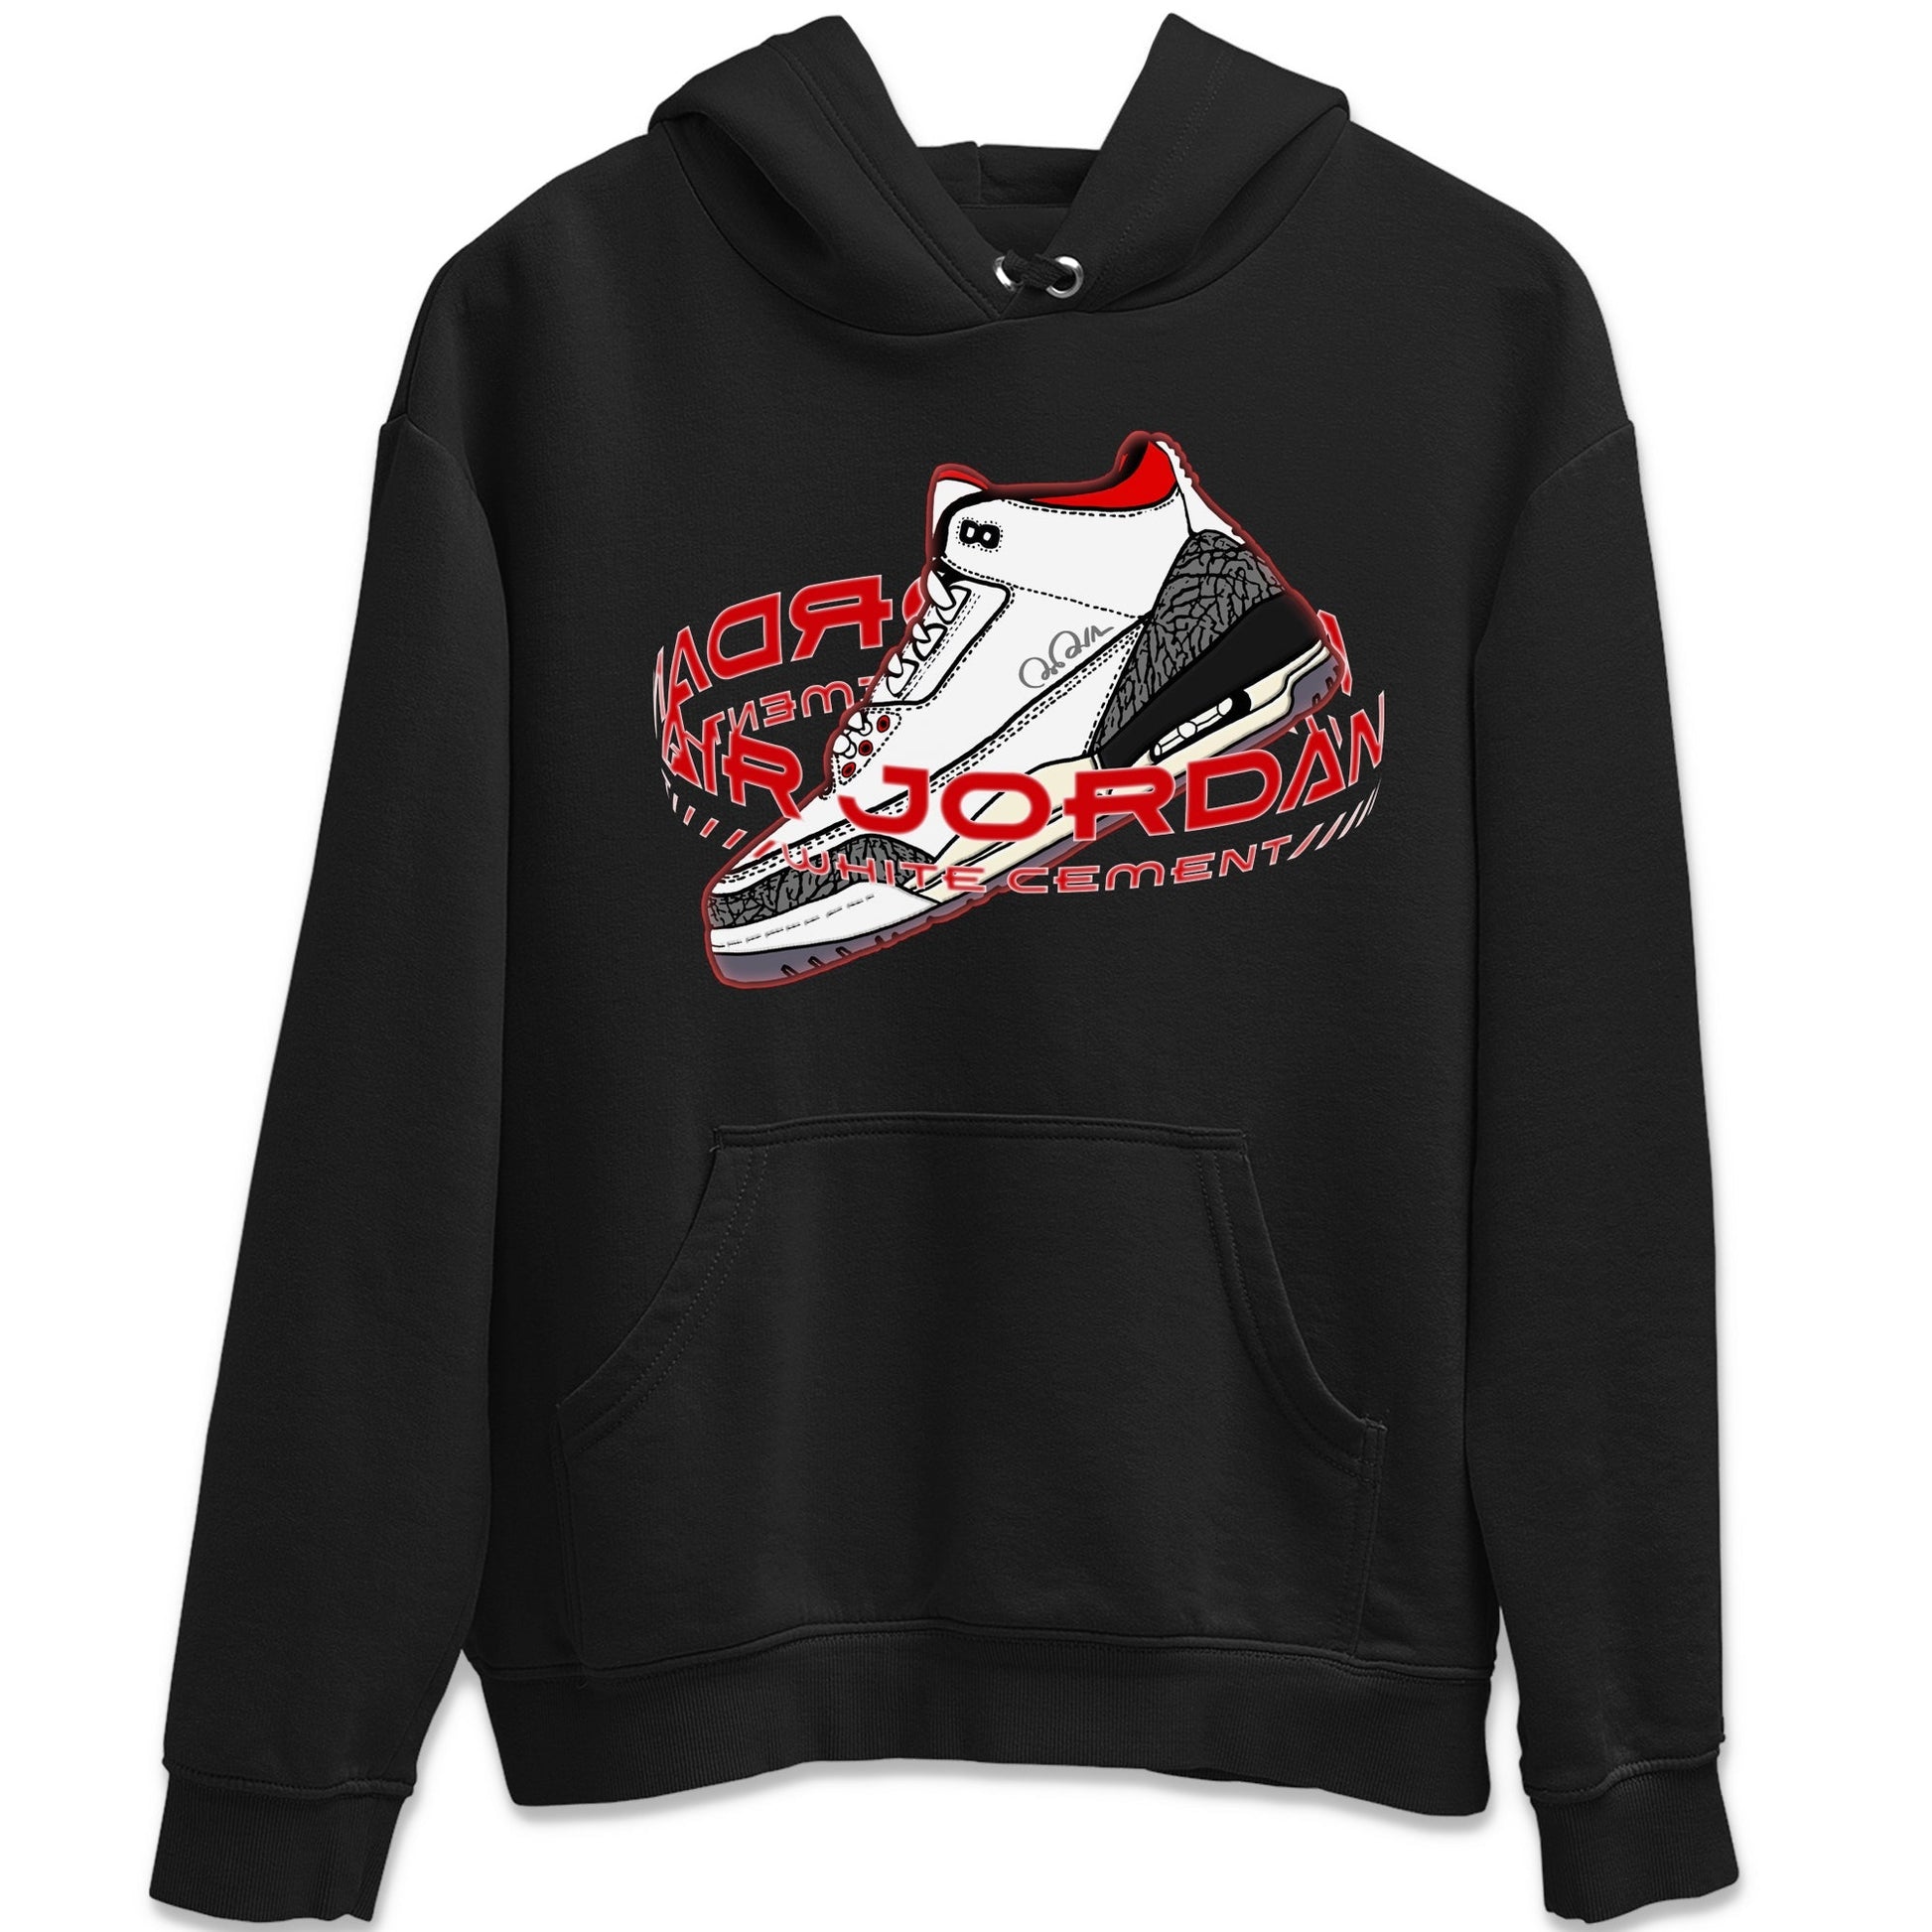 Air Jordan 3 White Cement Sneaker Tees Drip Gear Zone Warping Space Sneaker Tees AJ3 White Cement Shirt Unisex Shirts Black 2